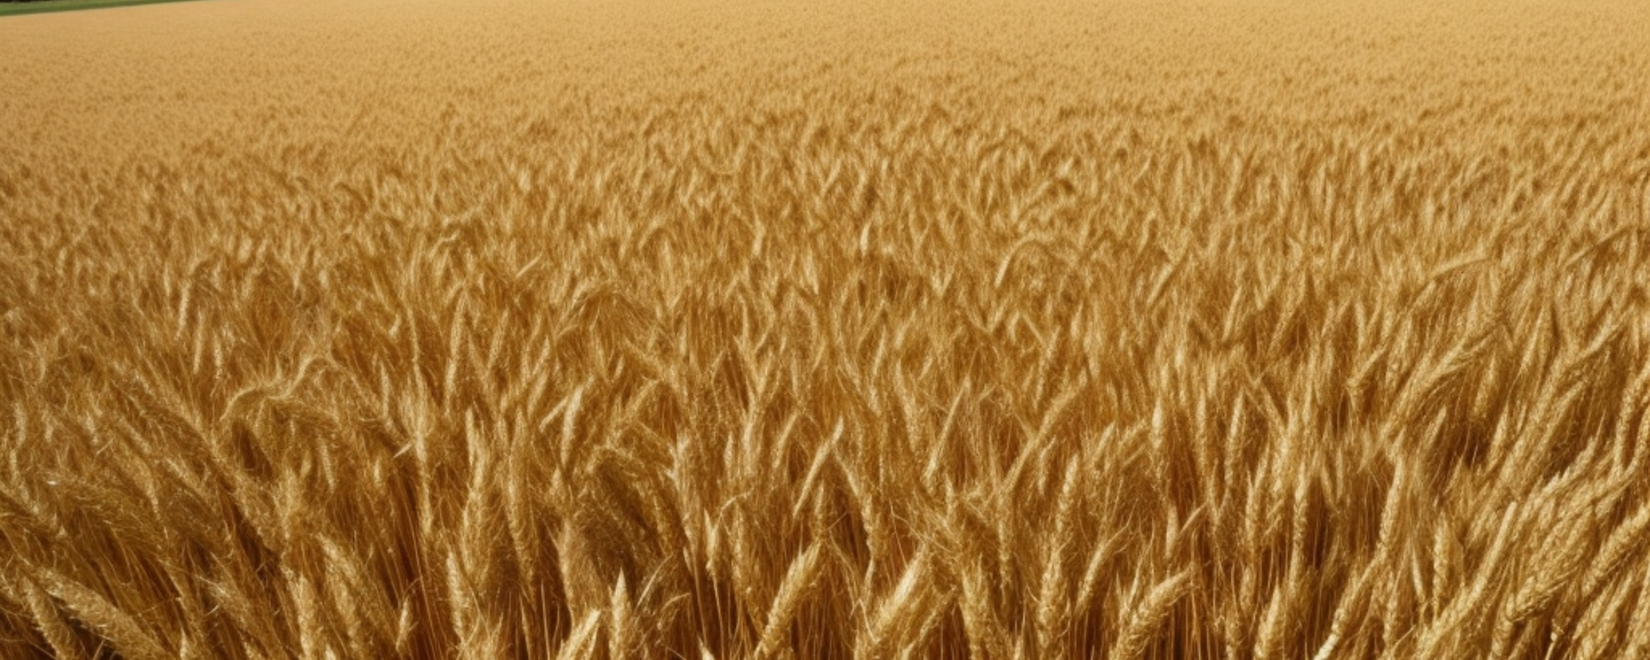 В октябре Австралия отправила за границу 1,4 млн тонн пшеницы